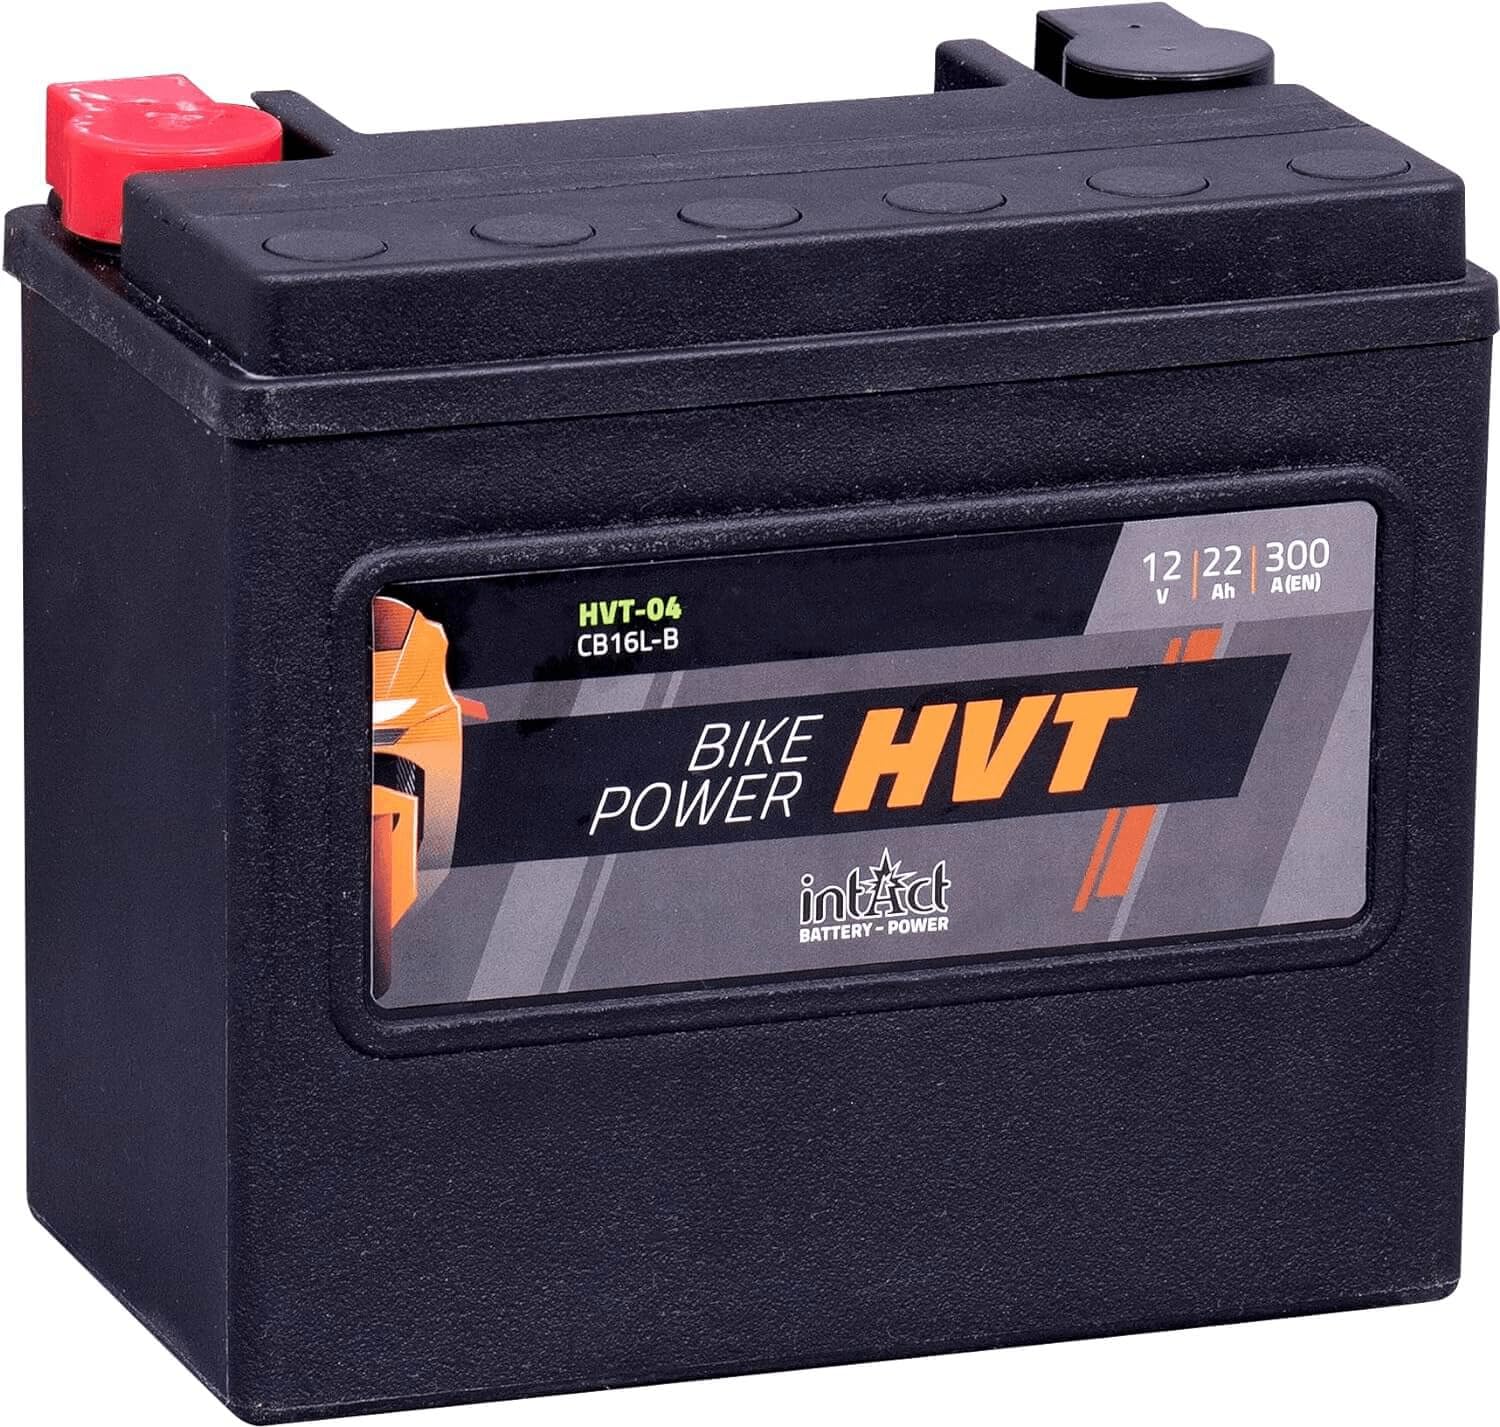 intAct - HVT MOTORRADBATTERIE | Batterie für Roller, Motorrad, Rasentraktor. Wartungsfreier & auslaufsicherer Akku. | HVT-04, CB16L-B, 65989-90B, 12V Batterie, 22 AH (c20), 300 A (EN) | Maße: 176x101x156mm von Intact